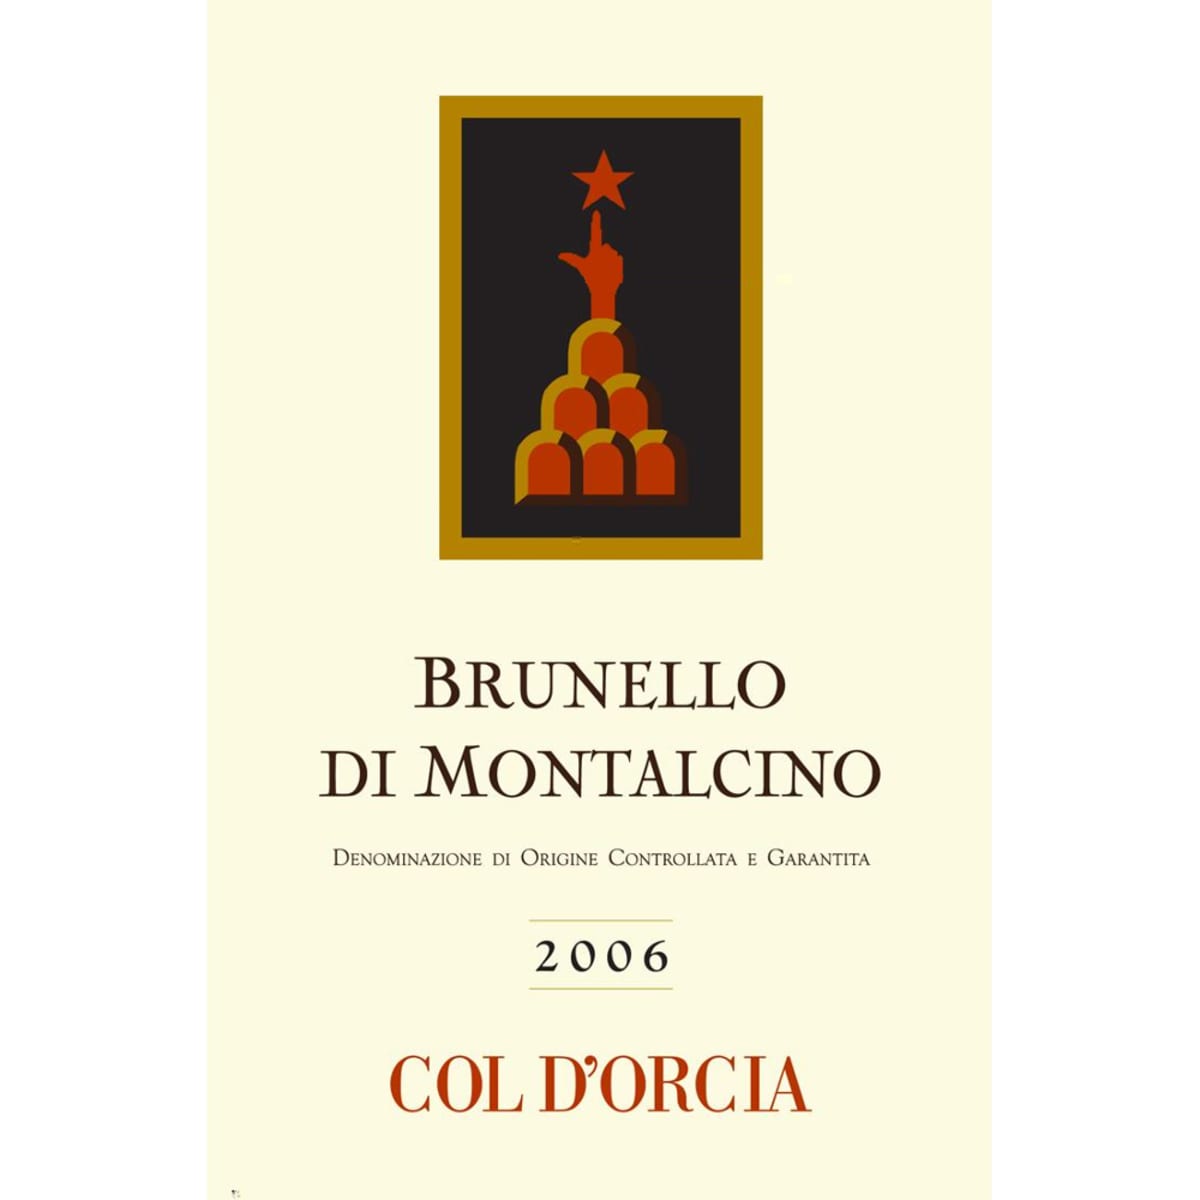 Col d'Orcia Brunello di Montalcino 2006 Front Label